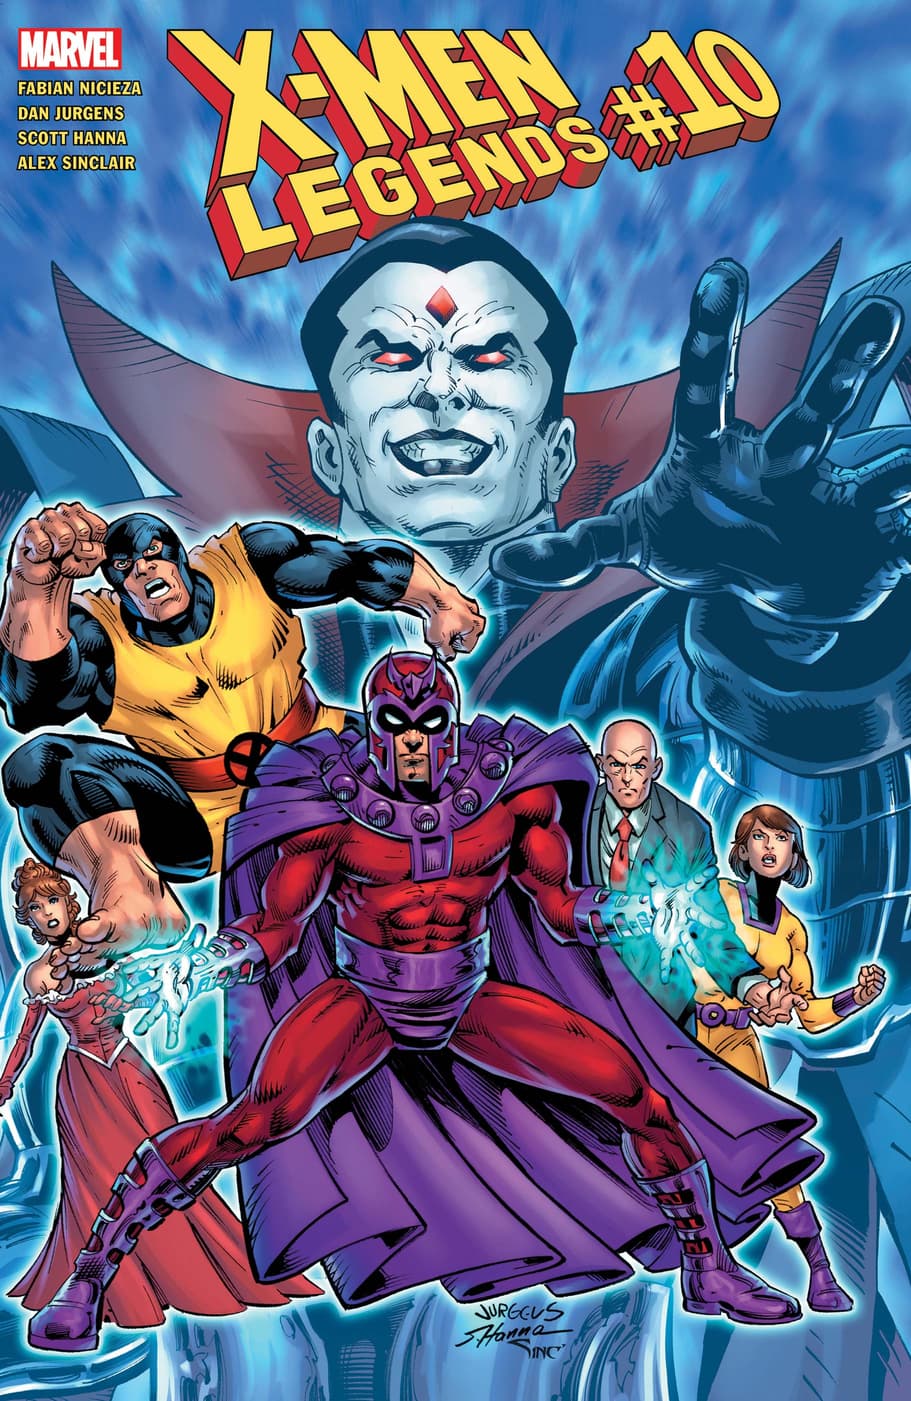 X-Men Legends #10 cover by Dan Jurgens.